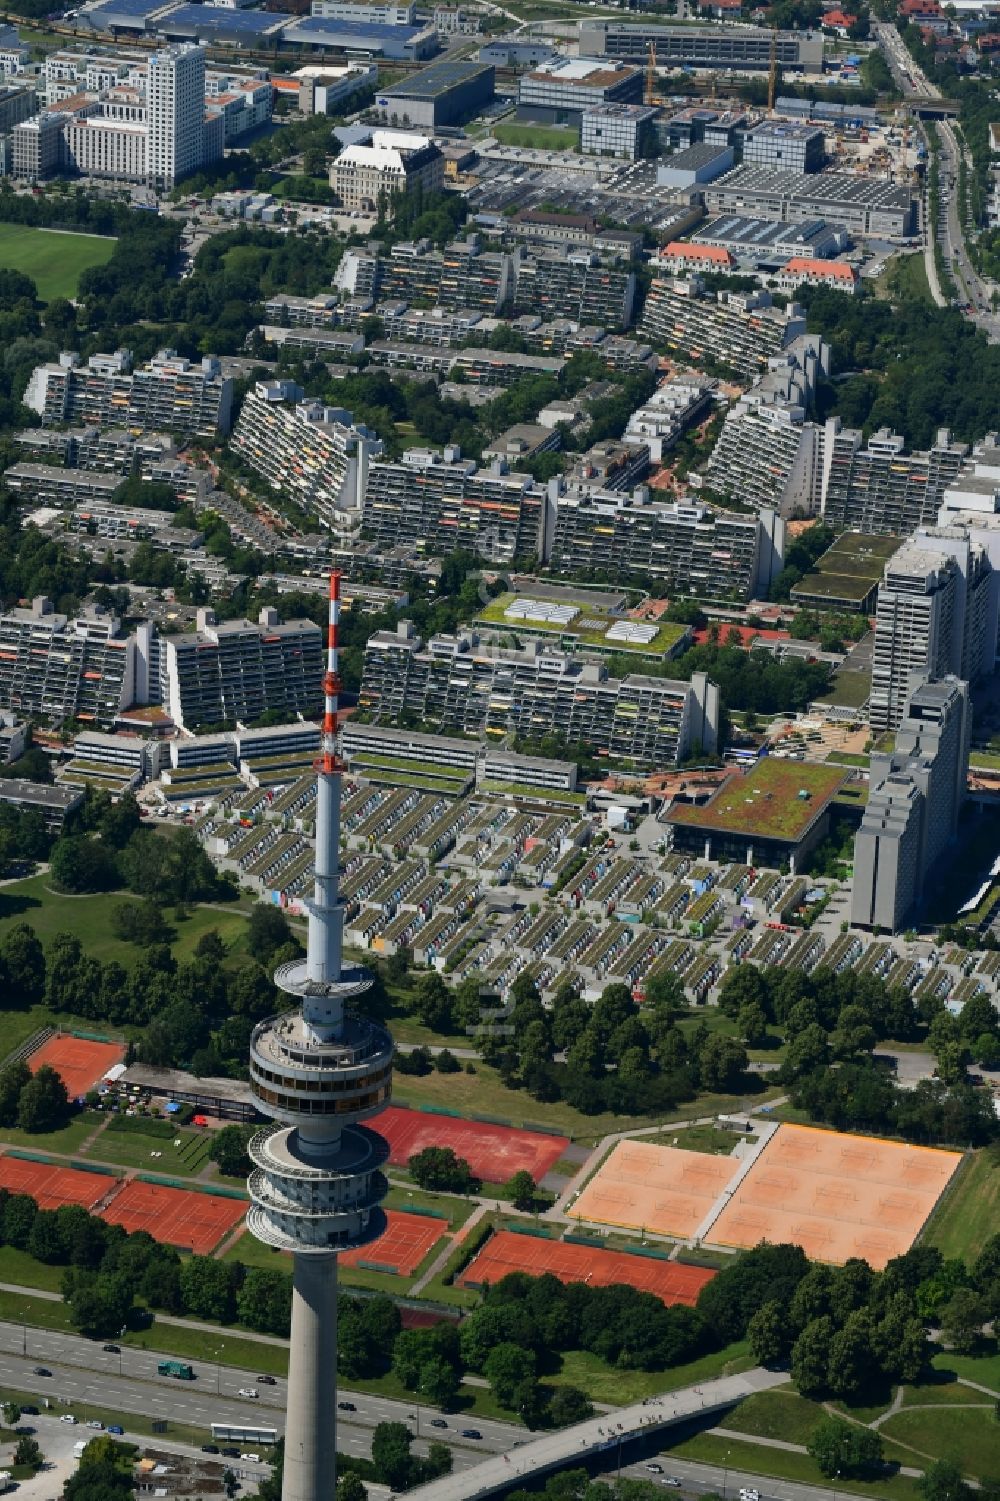 Luftbild München - Fernmeldeturm und Fernsehturm in München im Bundesland Bayern, Deutschland